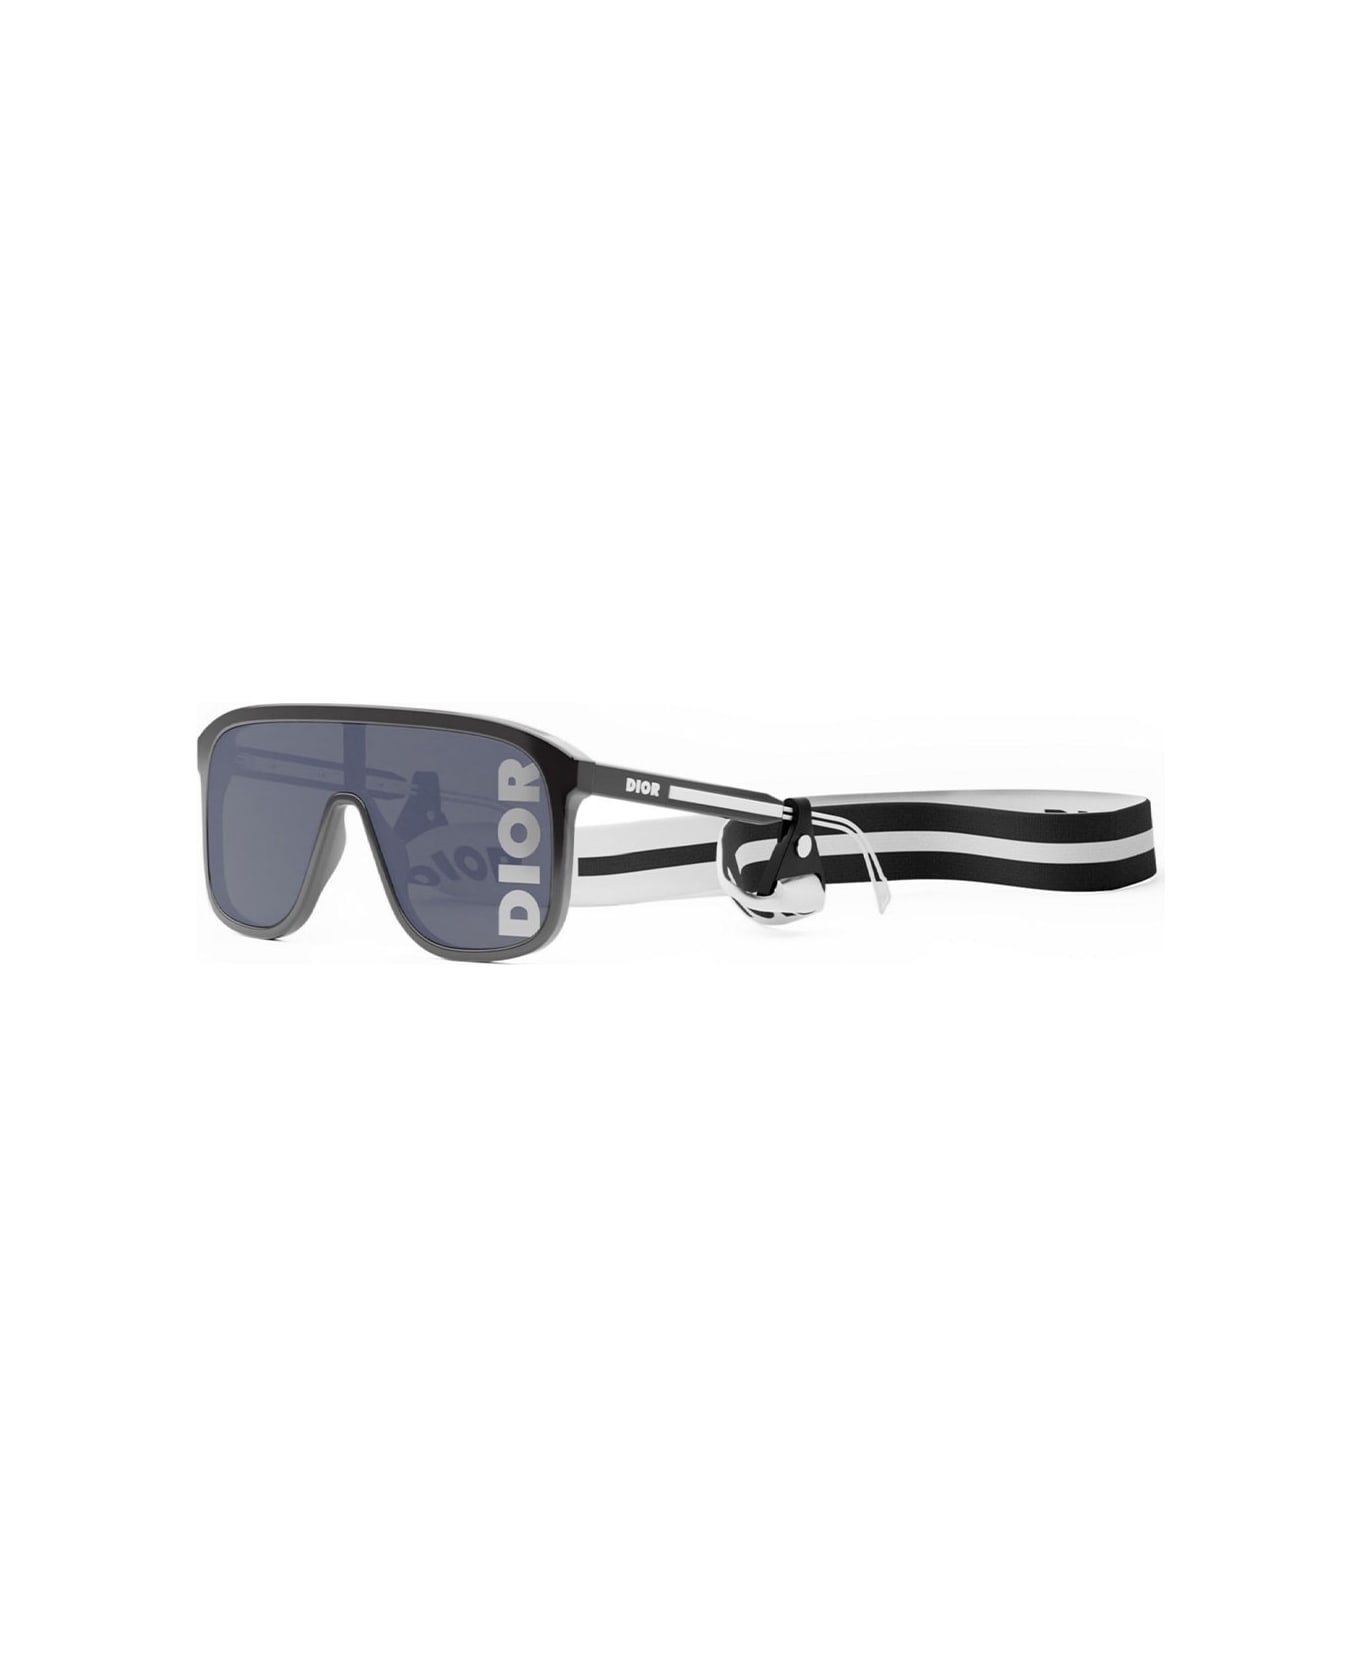 Dior Eyewear Sunglasses - Nero/Grigio specchiato